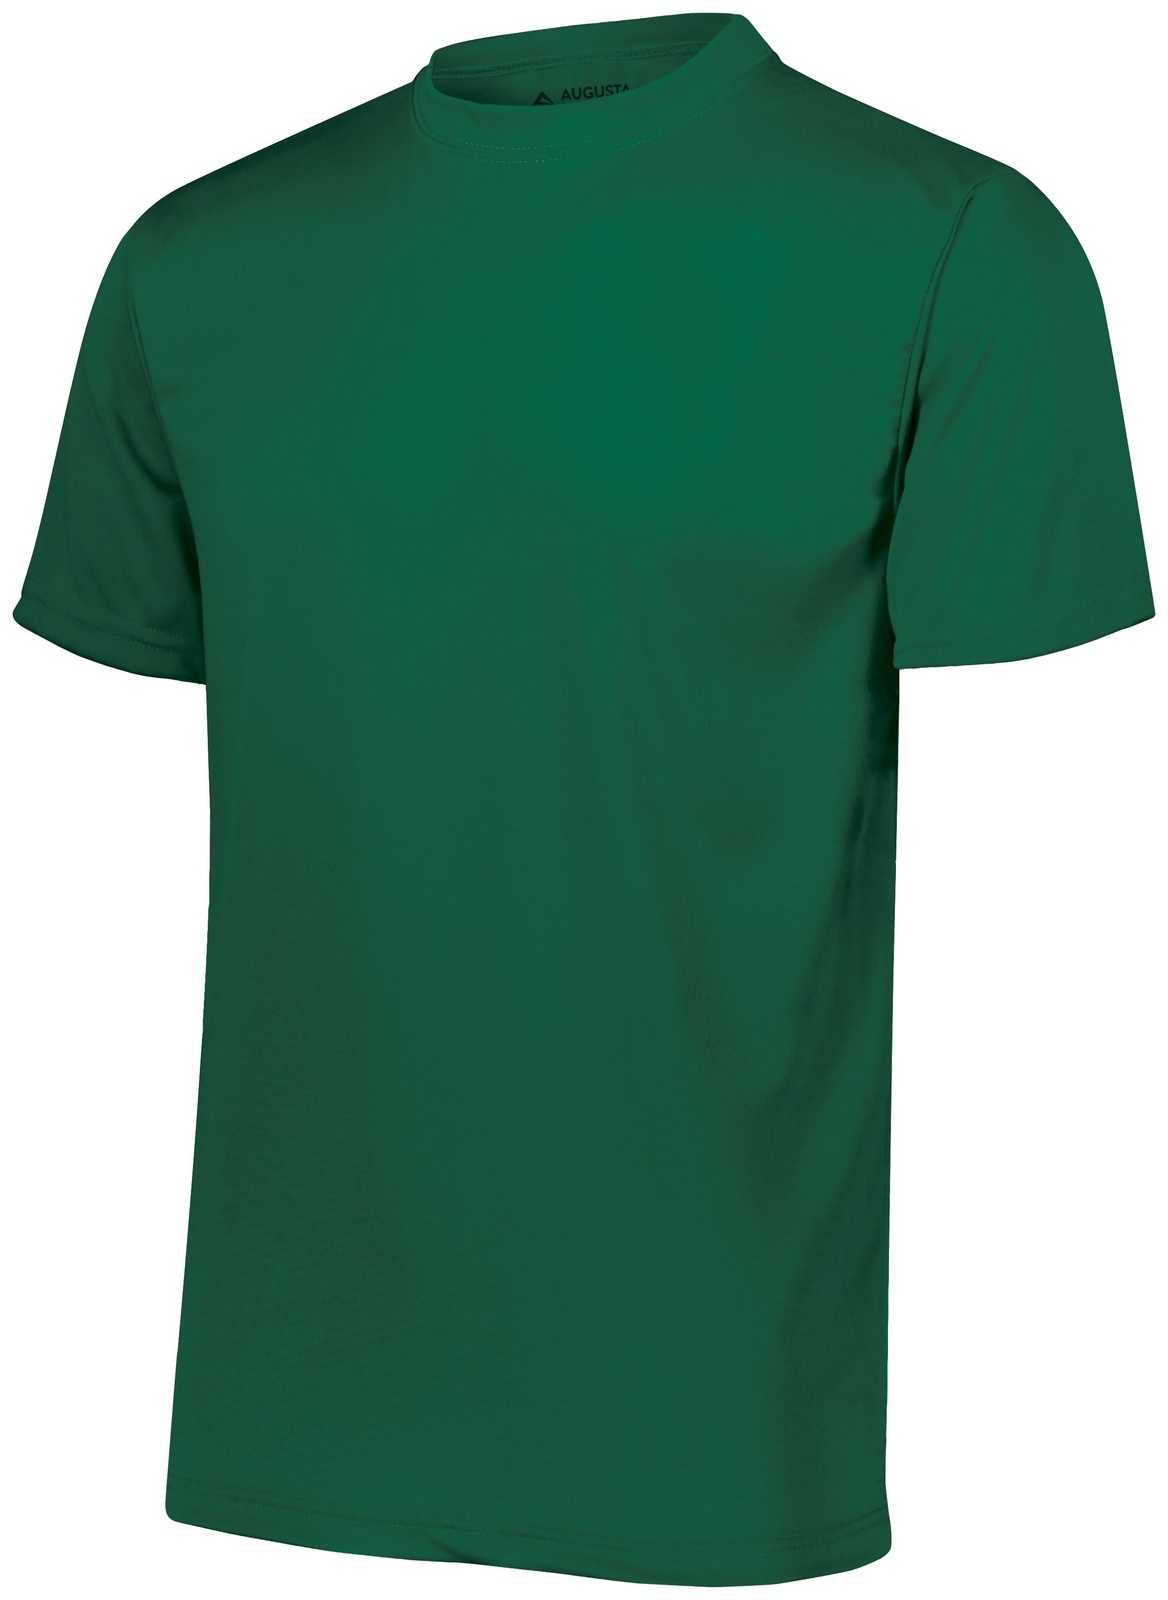 Augusta 791 NexGen Wicking T-Shirt - Youth - Dark Green - HIT a Double